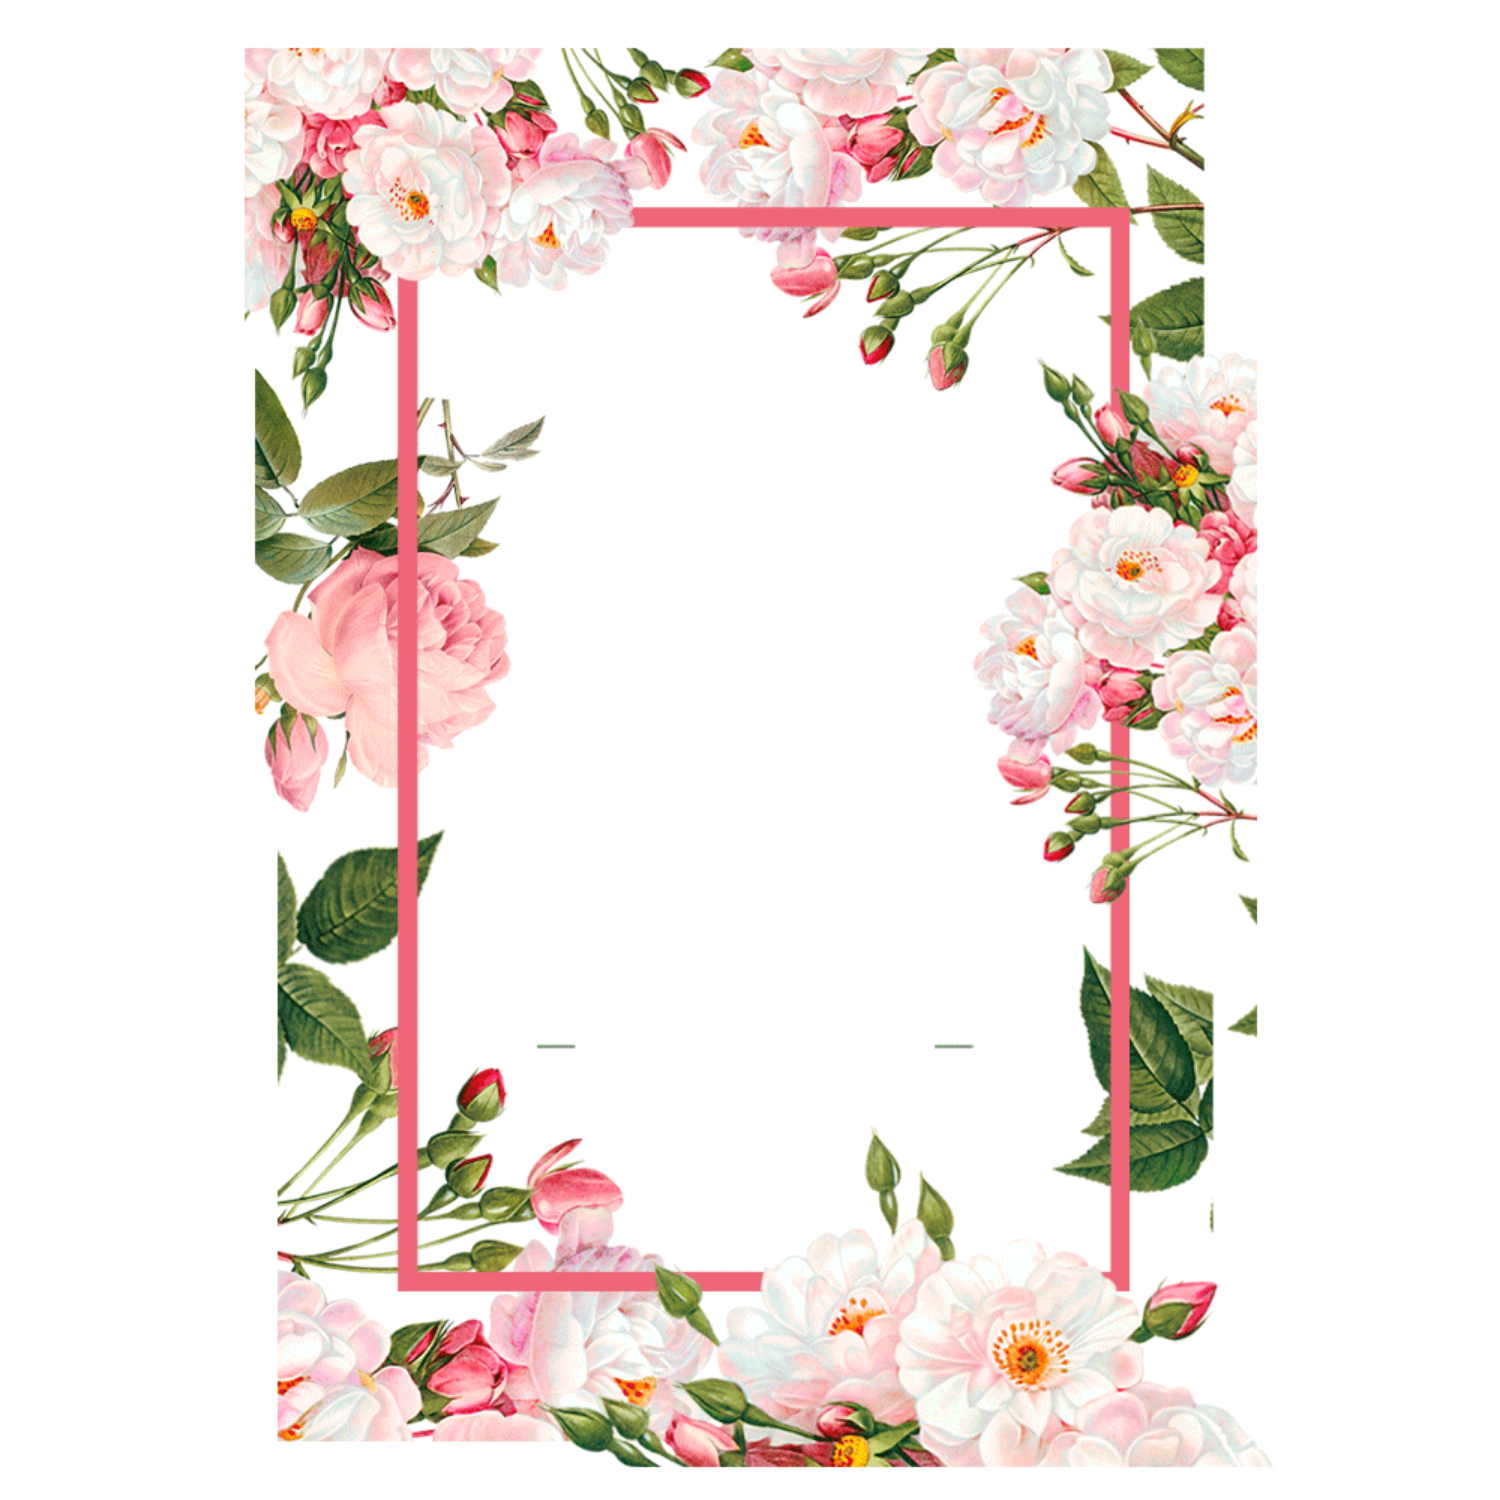 Pink Rose flower border wallpaper images hd download